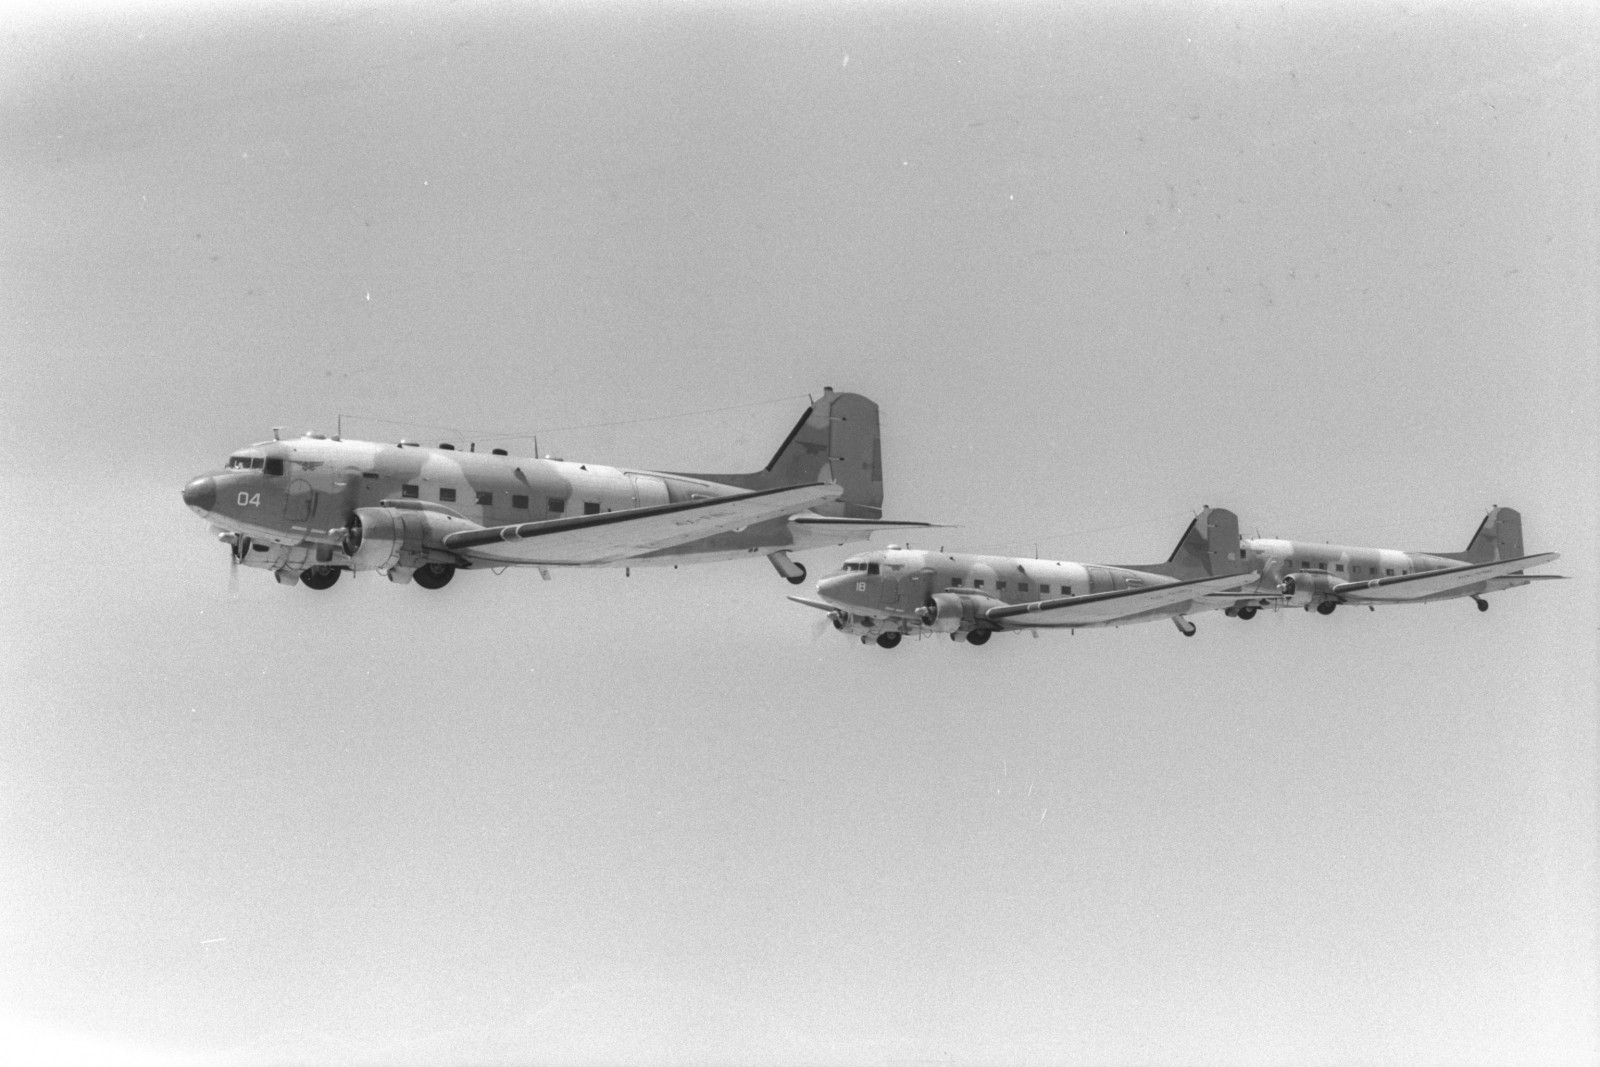 מטוס "דקוטה", שעליו טסה בתיה לסיני במבצע קדש (צילום: משה מילנר \ אוסף התצלומים הלאומי).